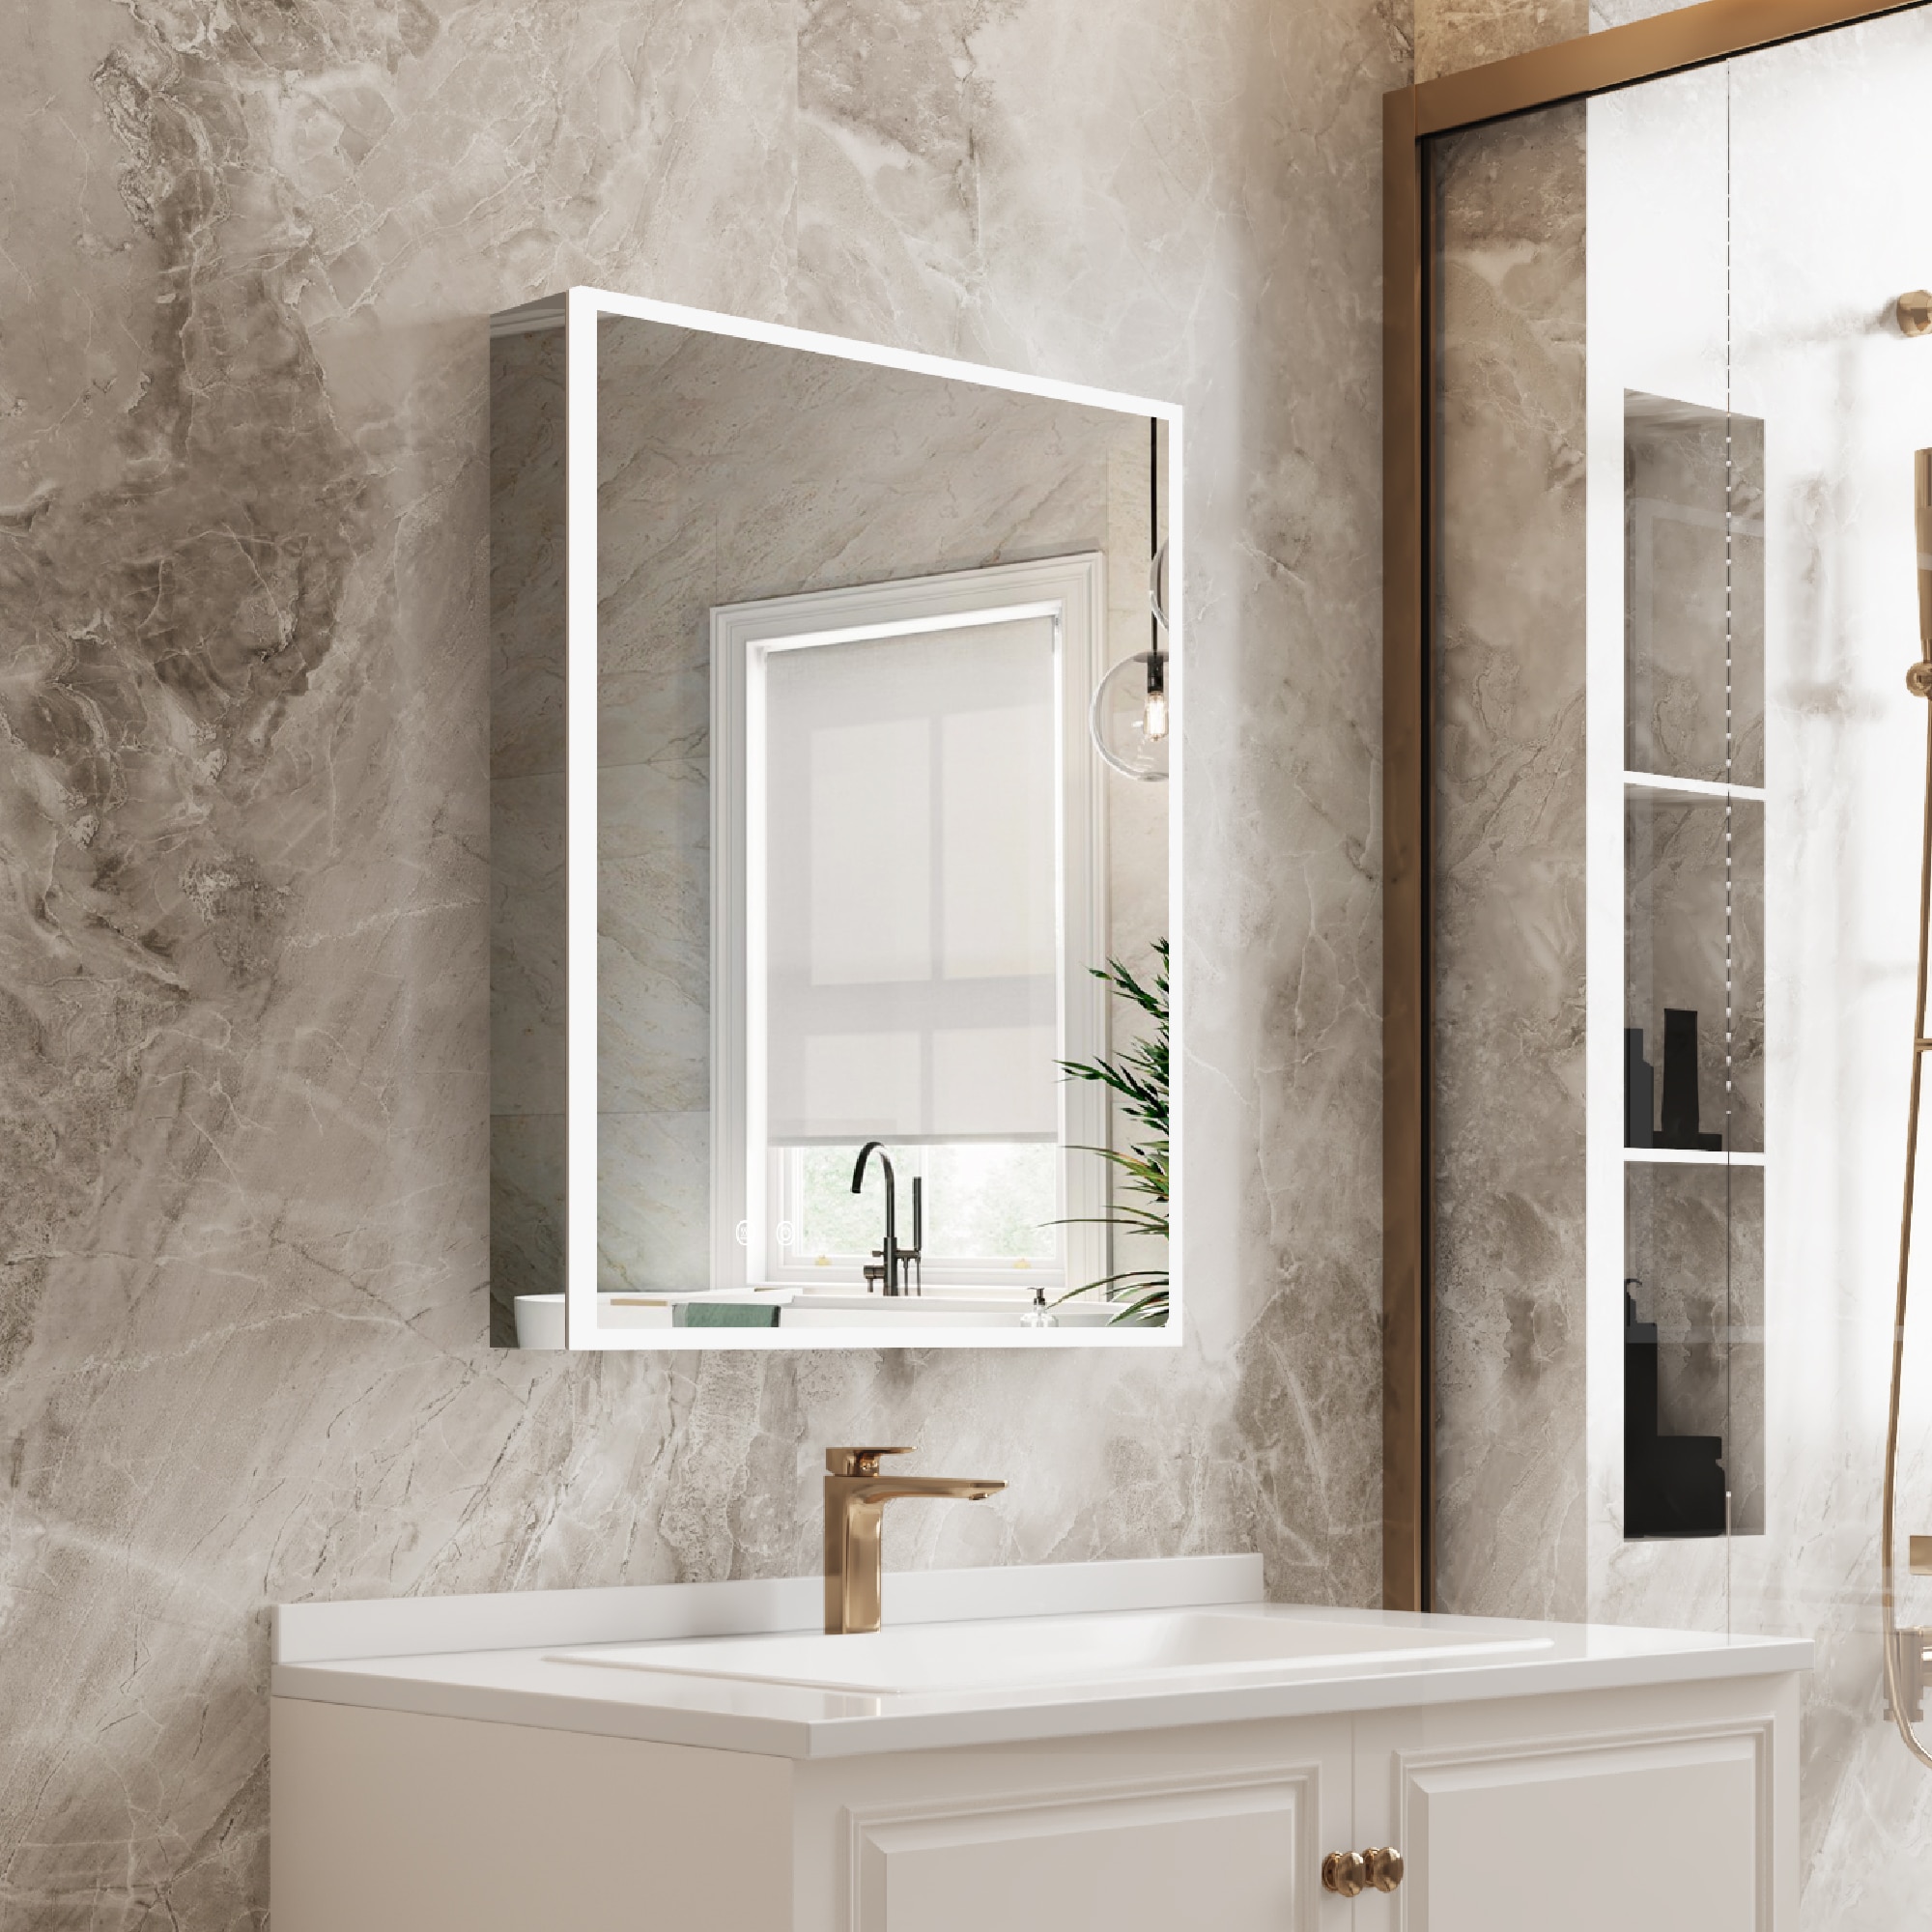 24'' Bathroom Vanity with Top Sink, 2-Tier Modern Bathroom Storage